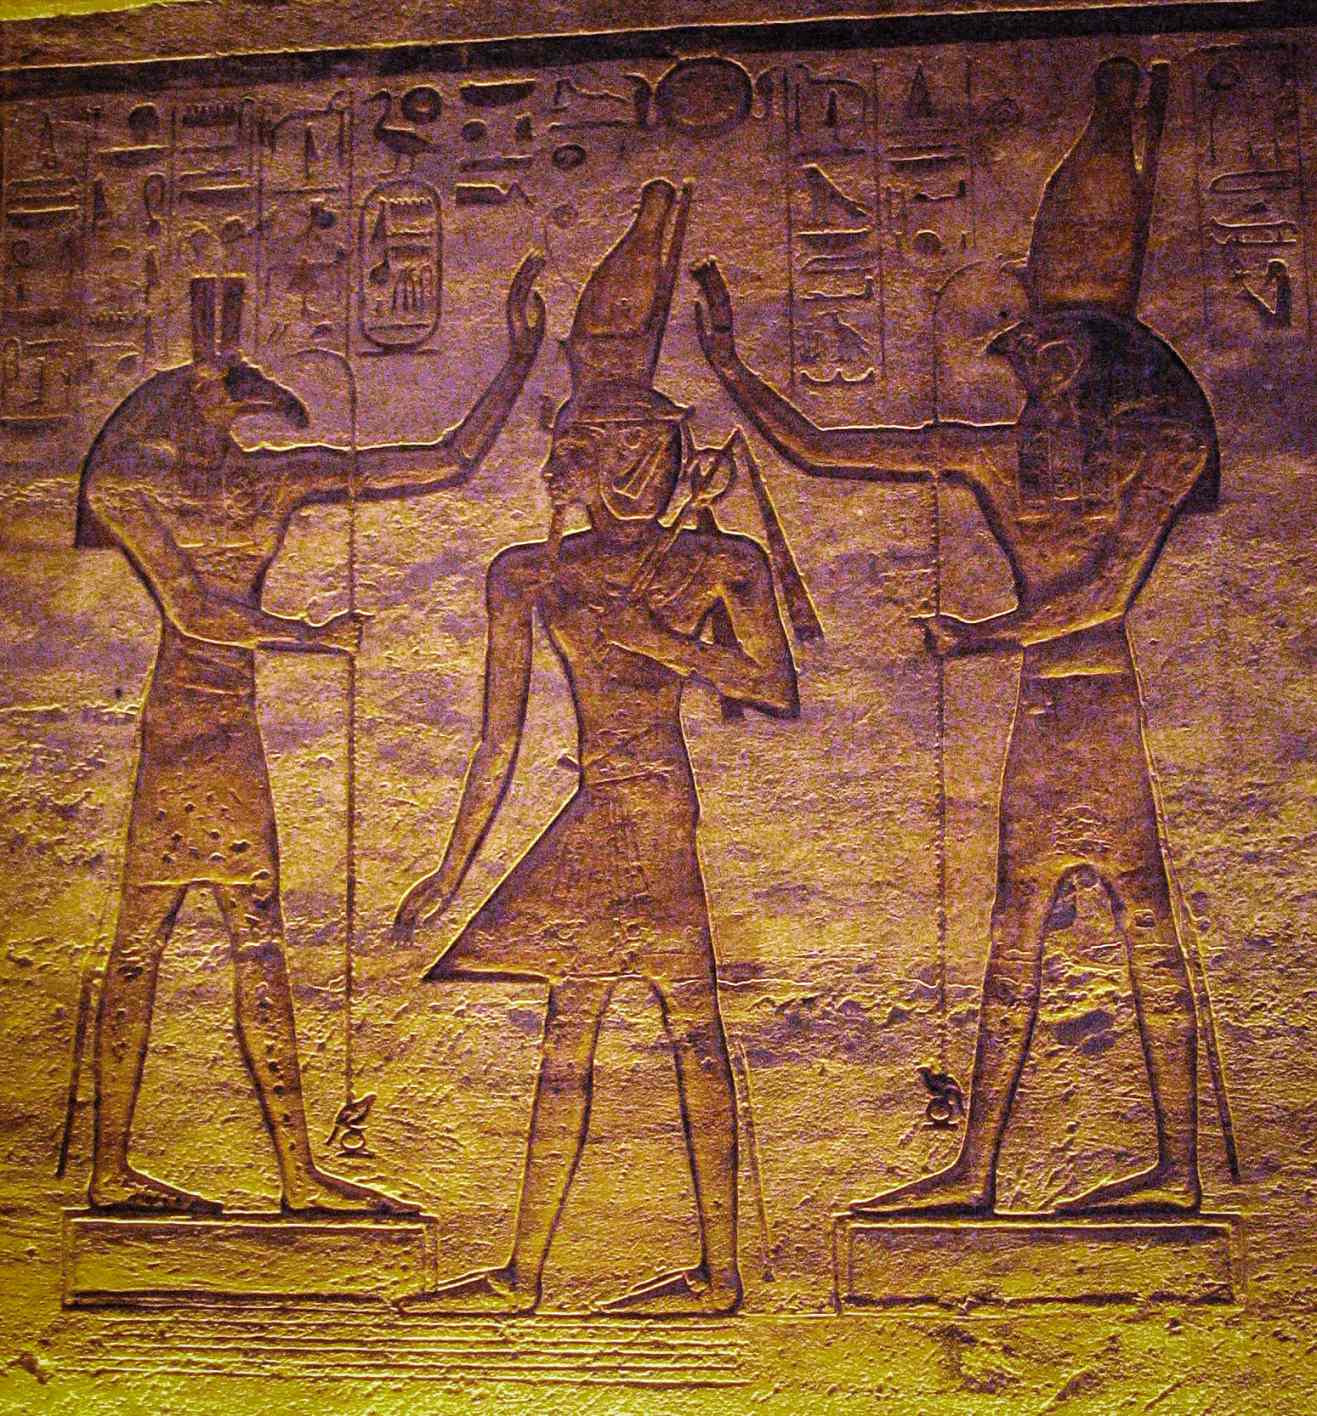 Ko Set (Seth) raua ko Horus e aroha ana ki a Ramesses. Ko te rangahau o naianei e whakaatu ana ko te marama pea na Seth me te whetu taurangi Algol na Horus i te Maramataka Kairo.